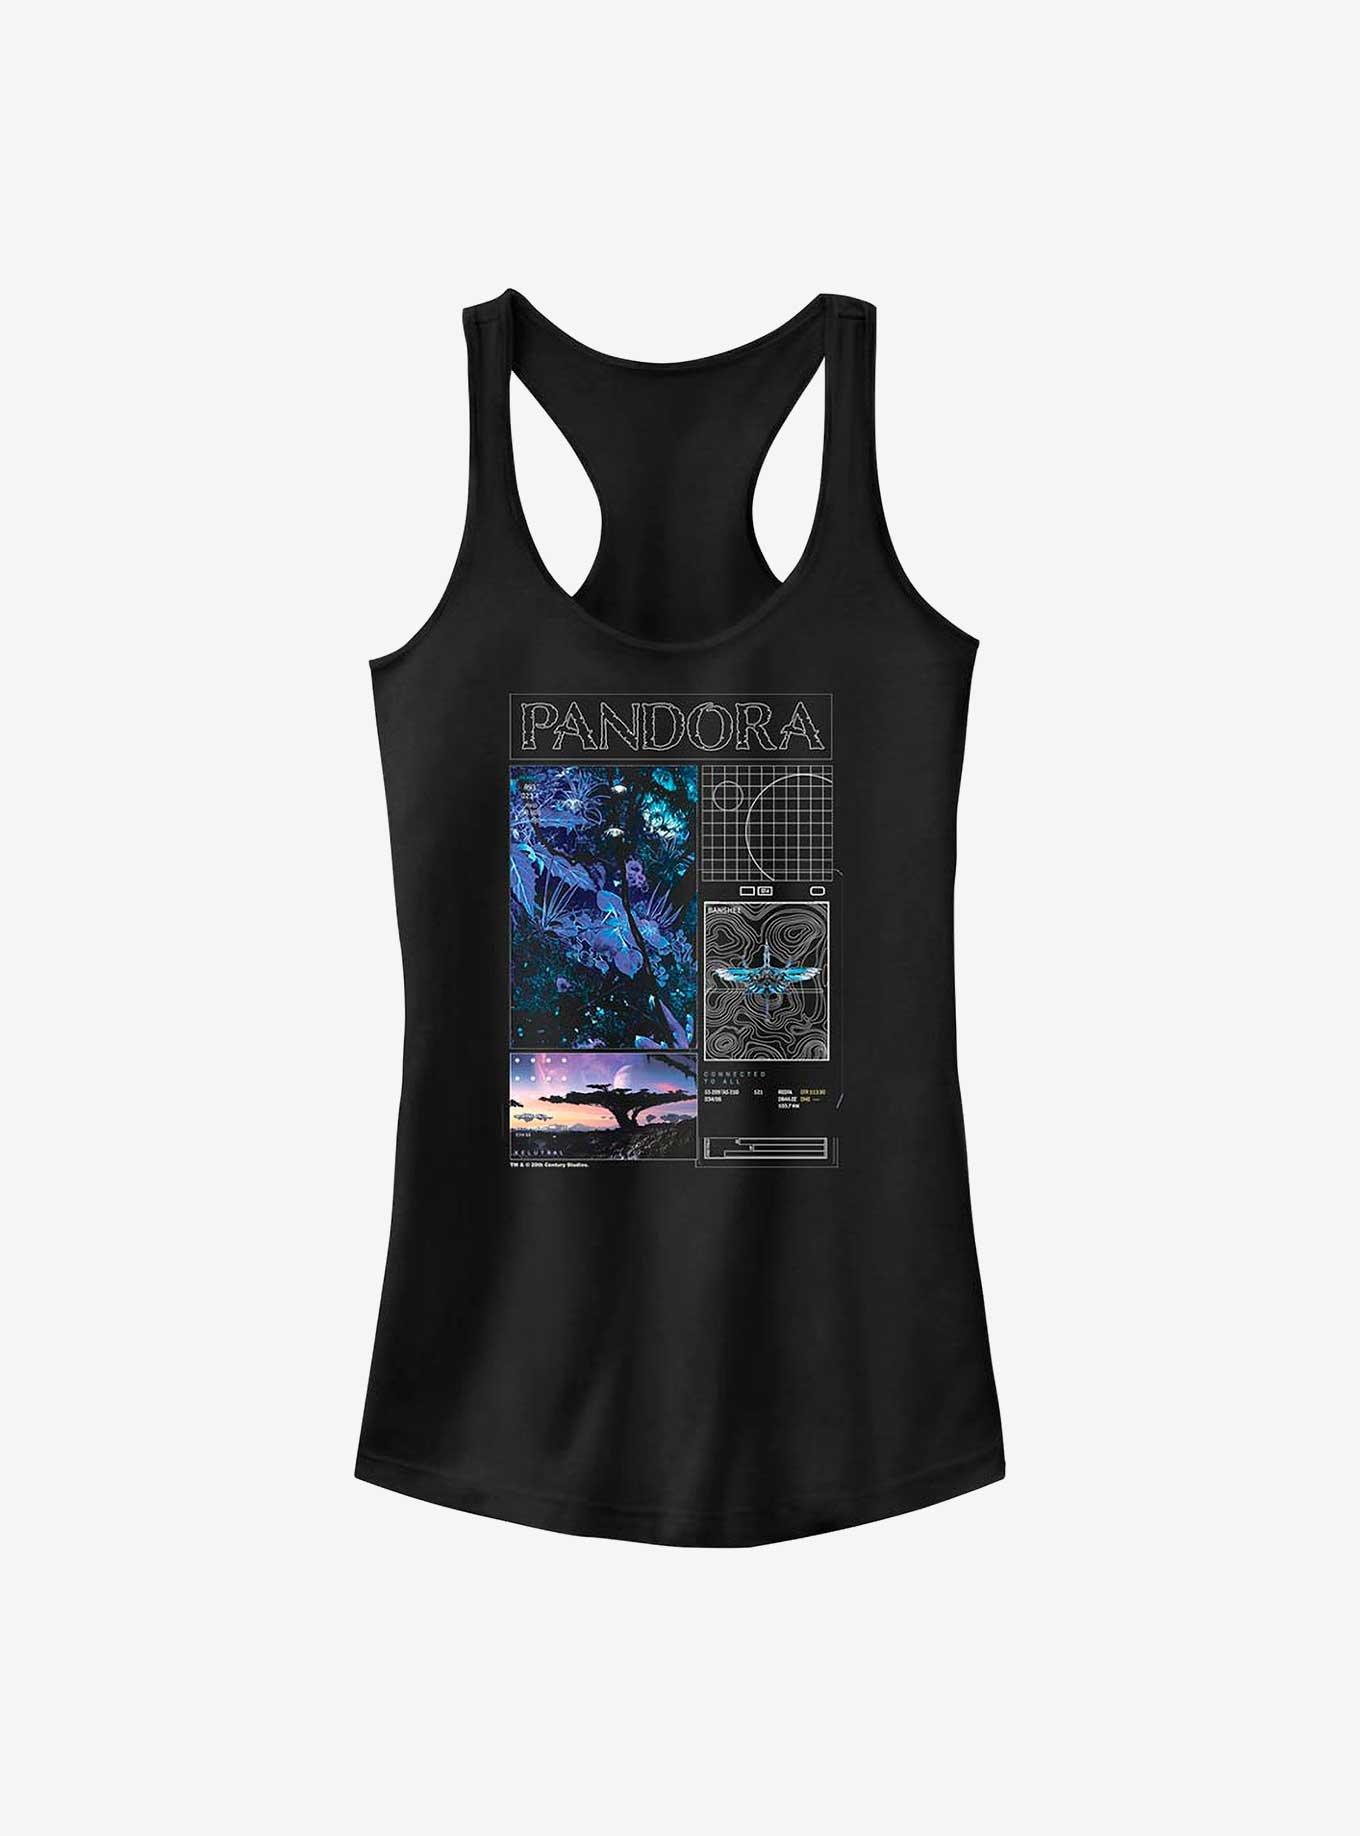 Avatar Pandora Schematic Girls Tank, BLACK, hi-res